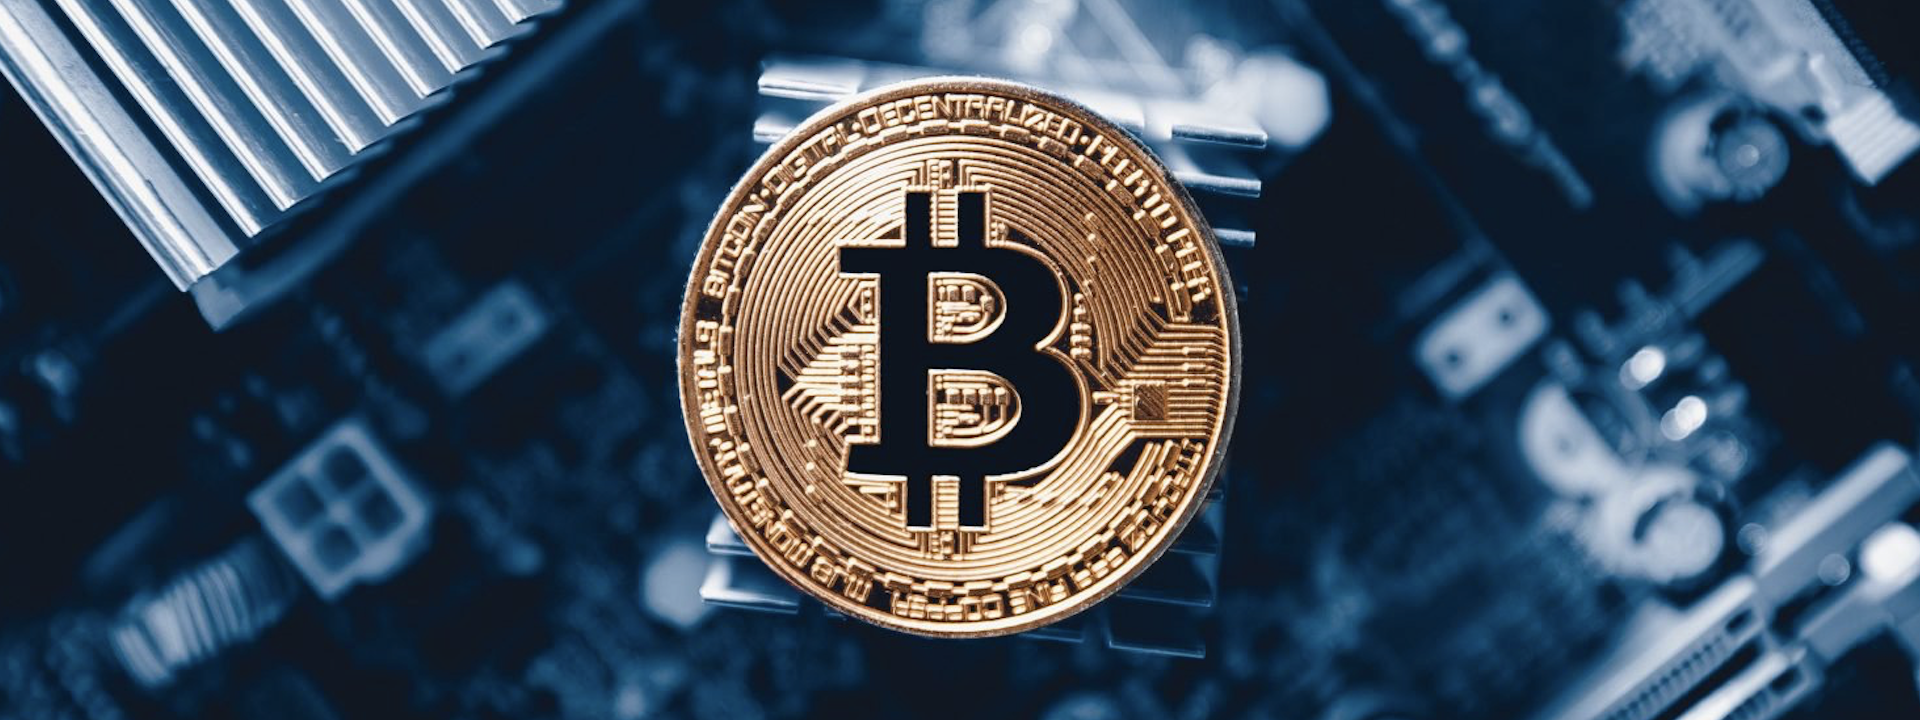 Bàn thêm về Bitcoin ETF và vì sao nó sẽ là bước ngoặt cho thị trường cryptocurrency